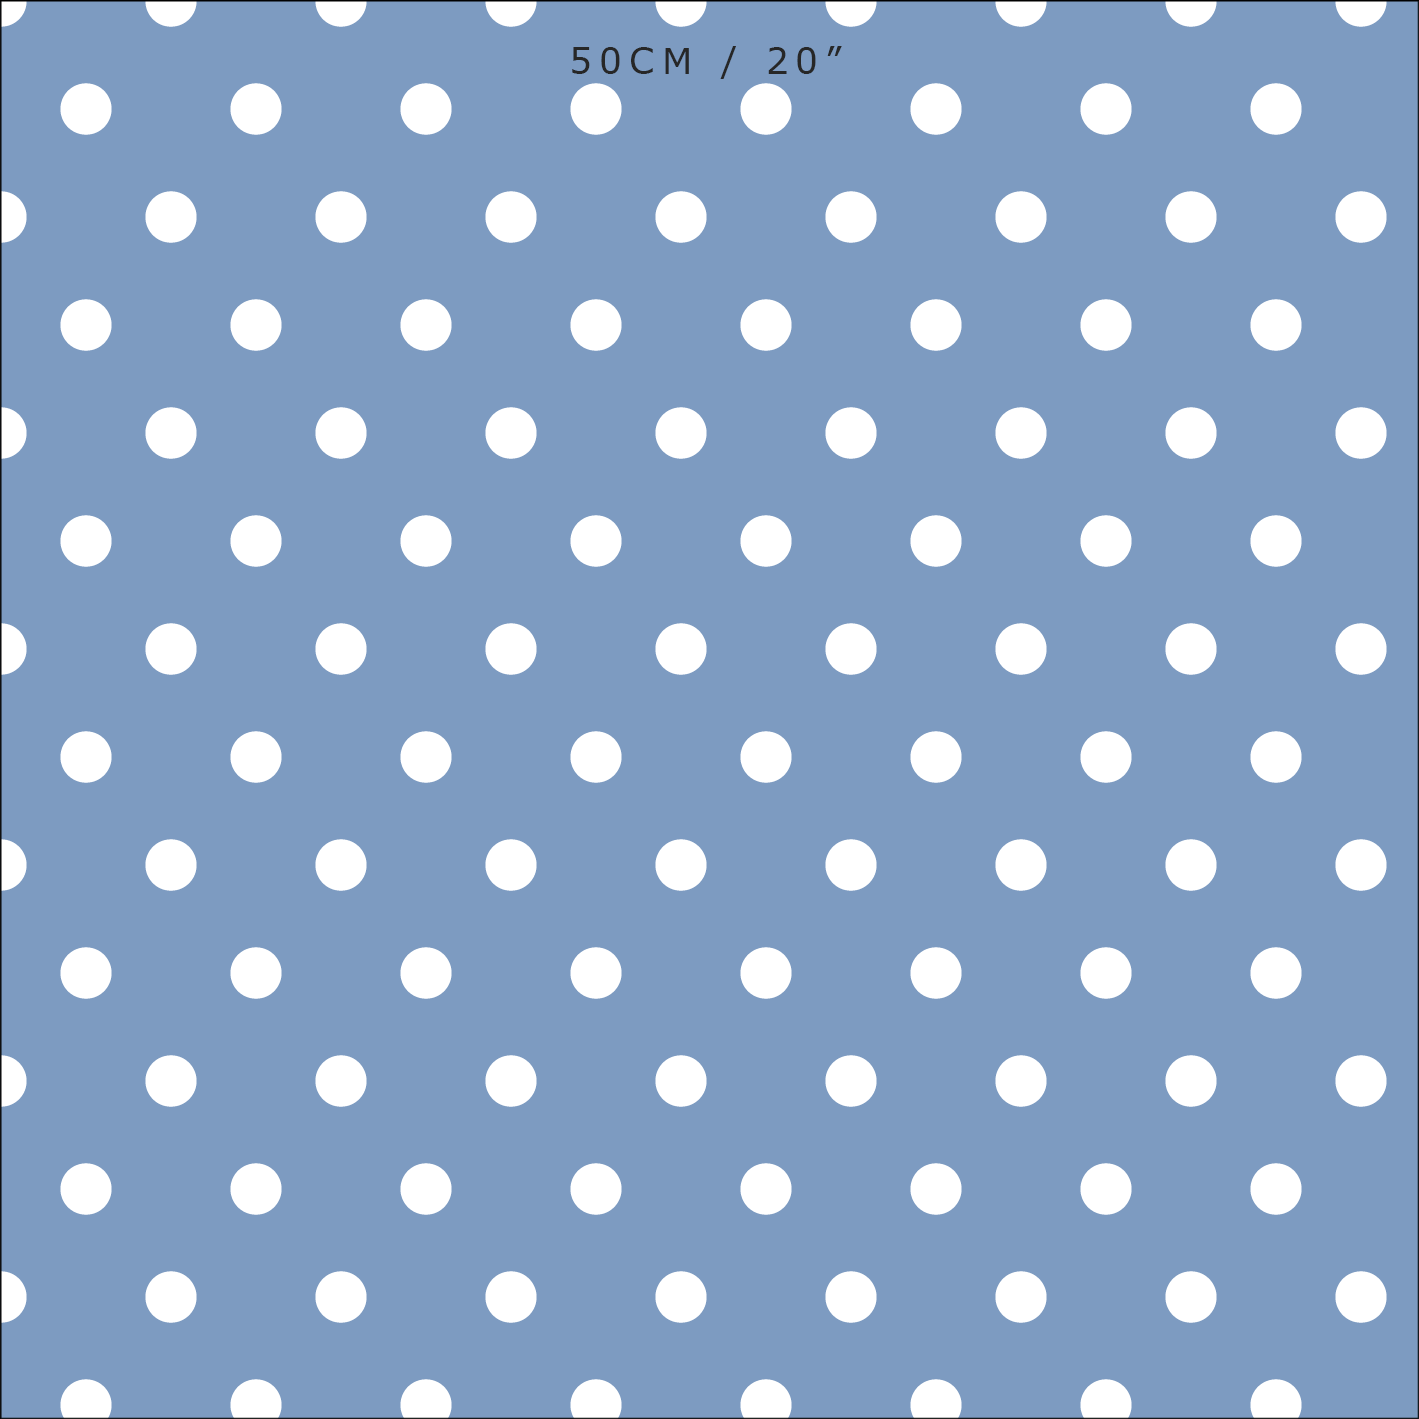 Spot Dot cotton linen fabric in Breeze blue